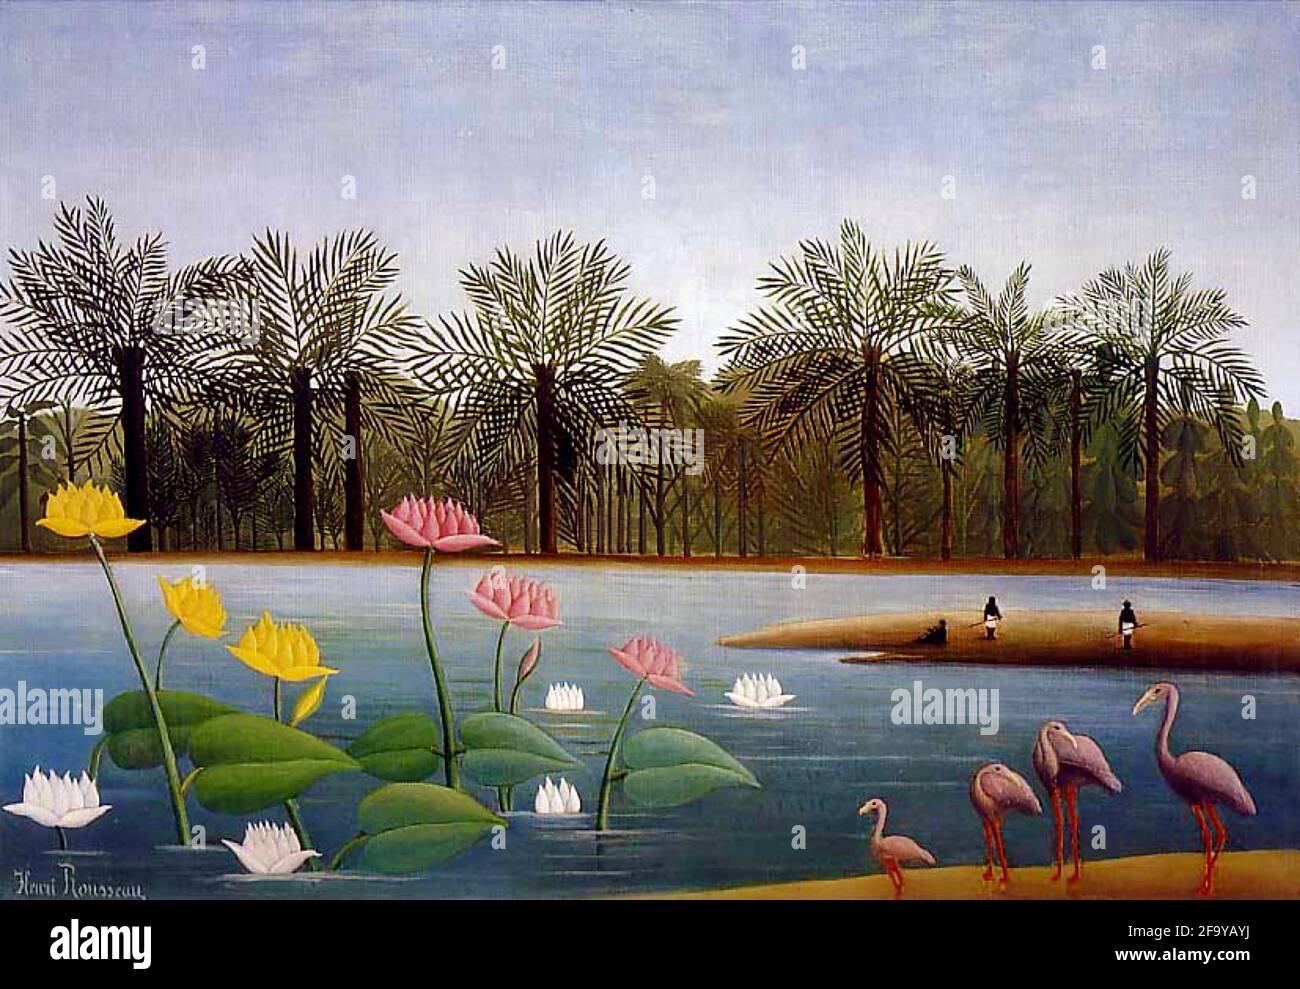 Œuvre d'Henri Rousseau intitulée les Flamingos. Paysage exotique sur une voie navigable avec des nénuphars géants, des palmiers et des flamants roses. Banque D'Images